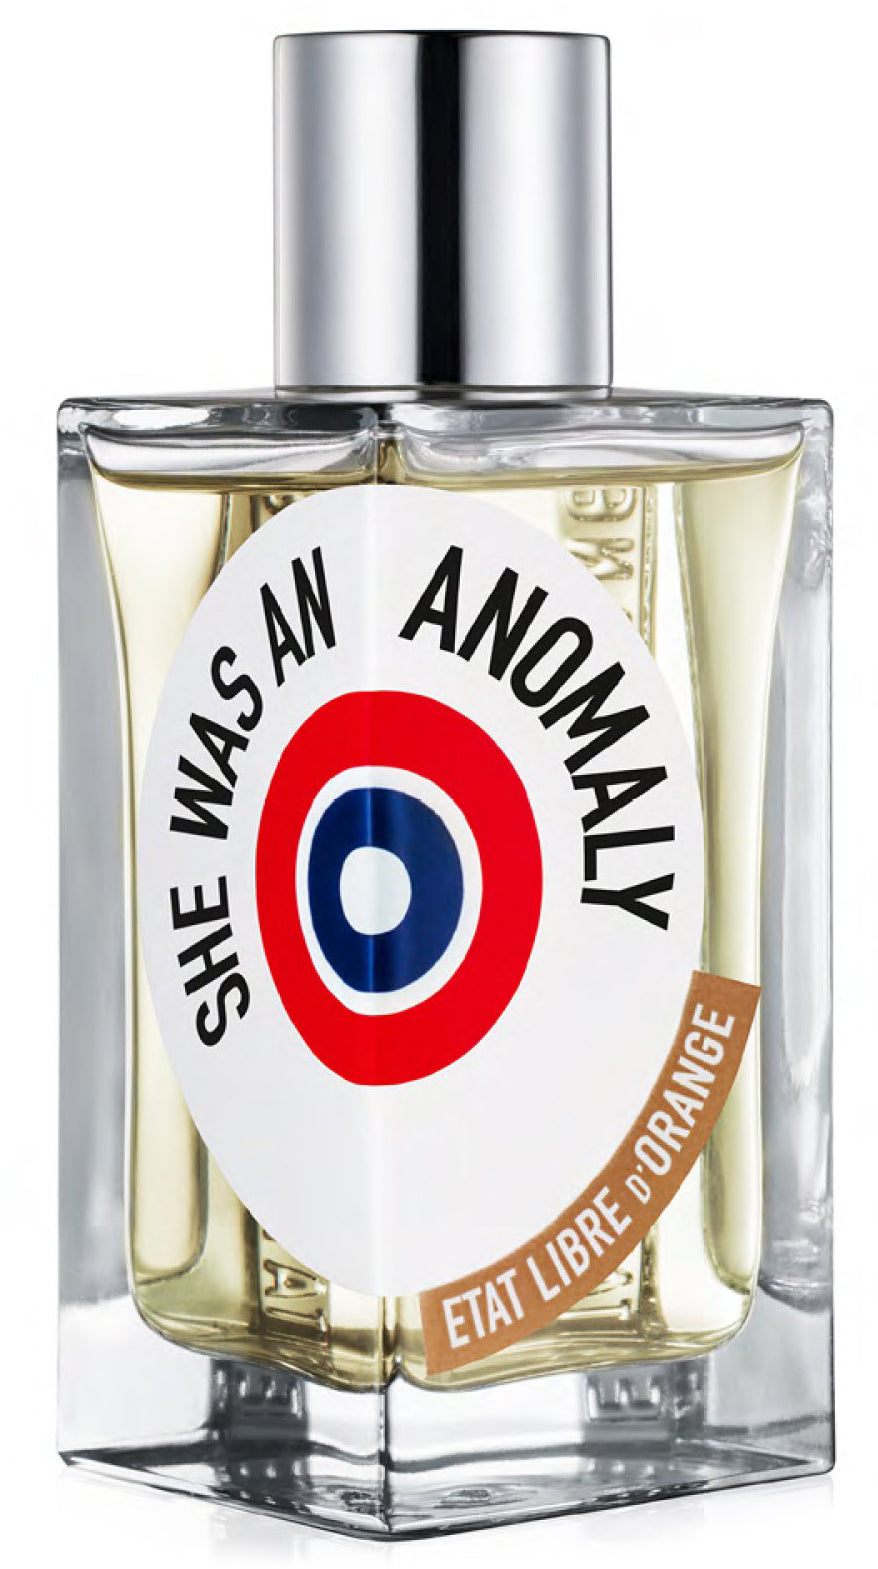 She Was An Anomaly Eau de Parfum Spray (Unisex) by Etat Libre D'Orange 3.4 oz